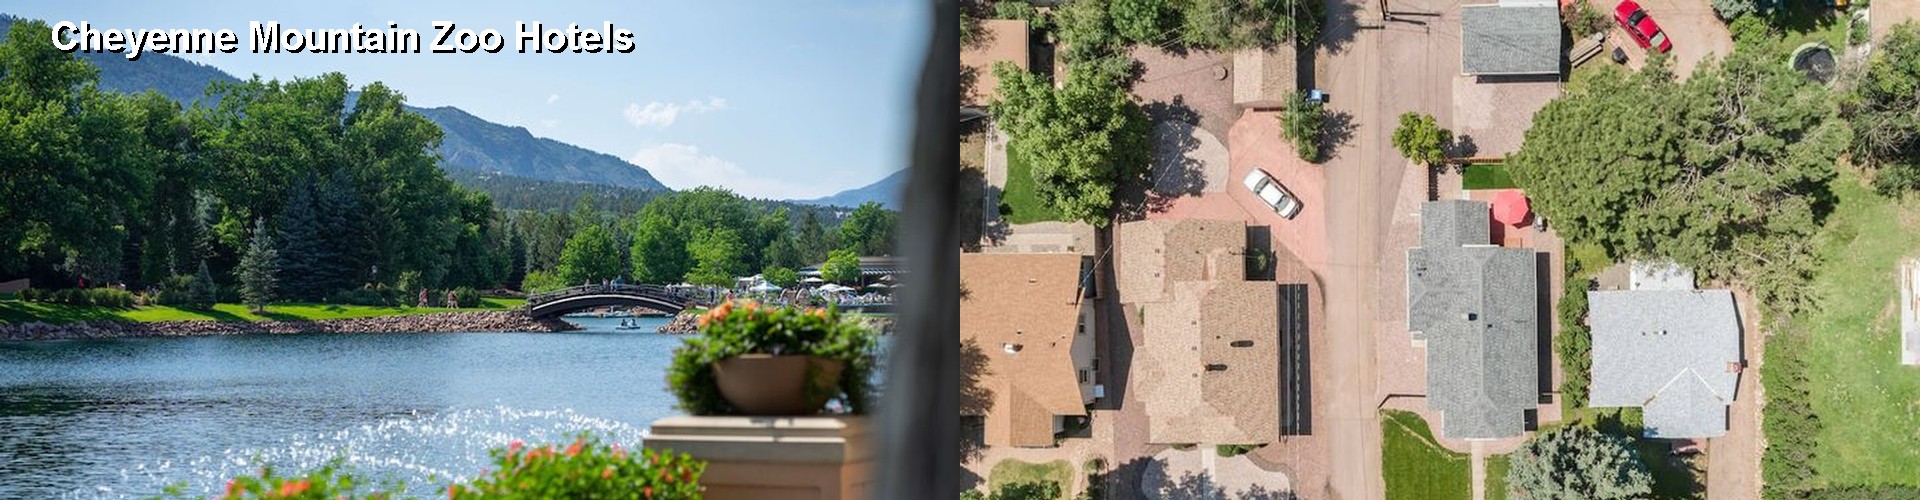 5 Best Hotels near Cheyenne Mountain Zoo